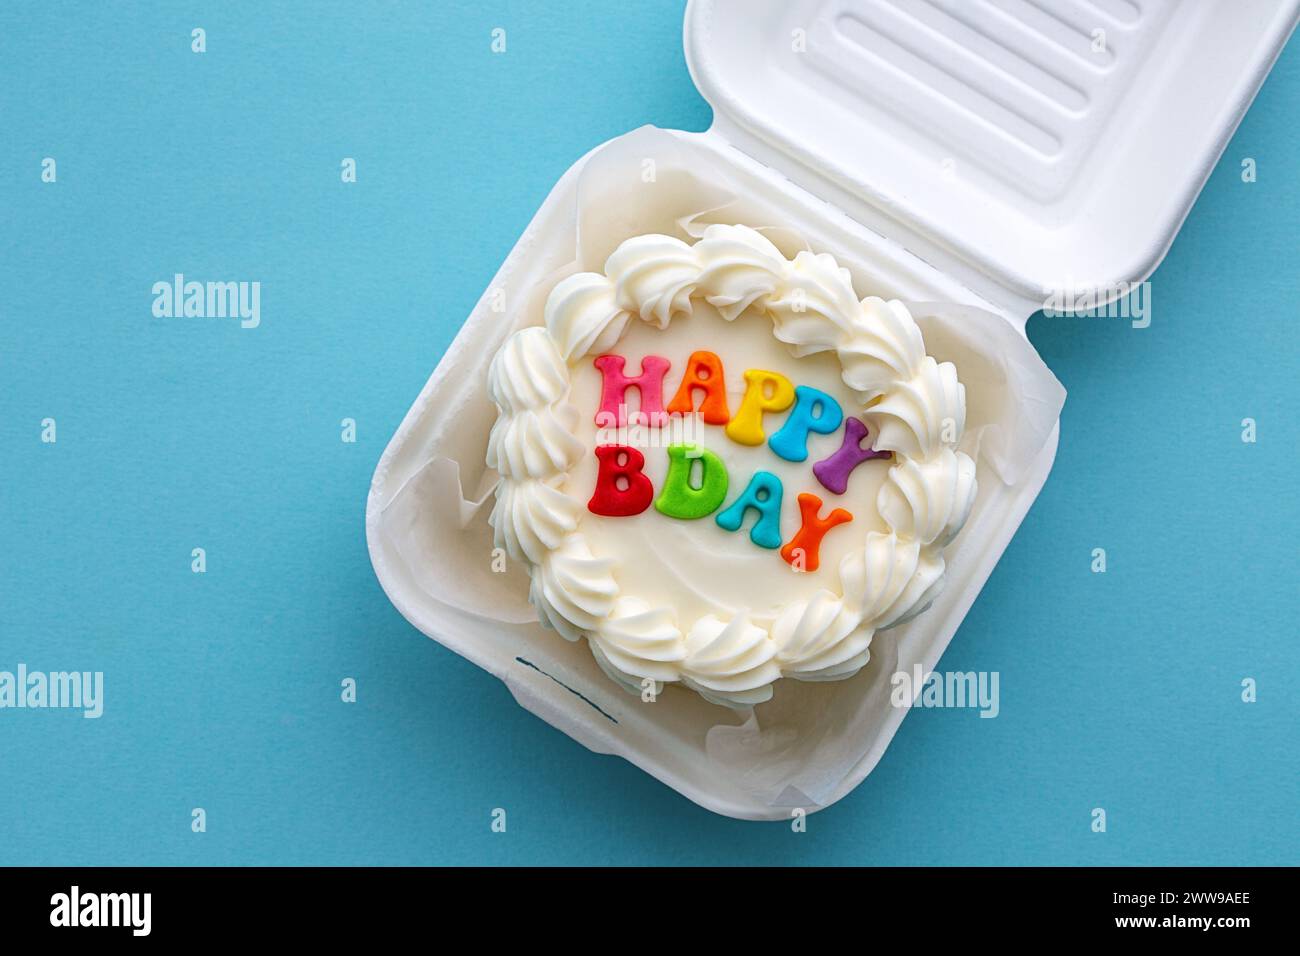 Mini torta di compleanno con un colorato messaggio di buon compleanno in un cestino di cartone Foto Stock